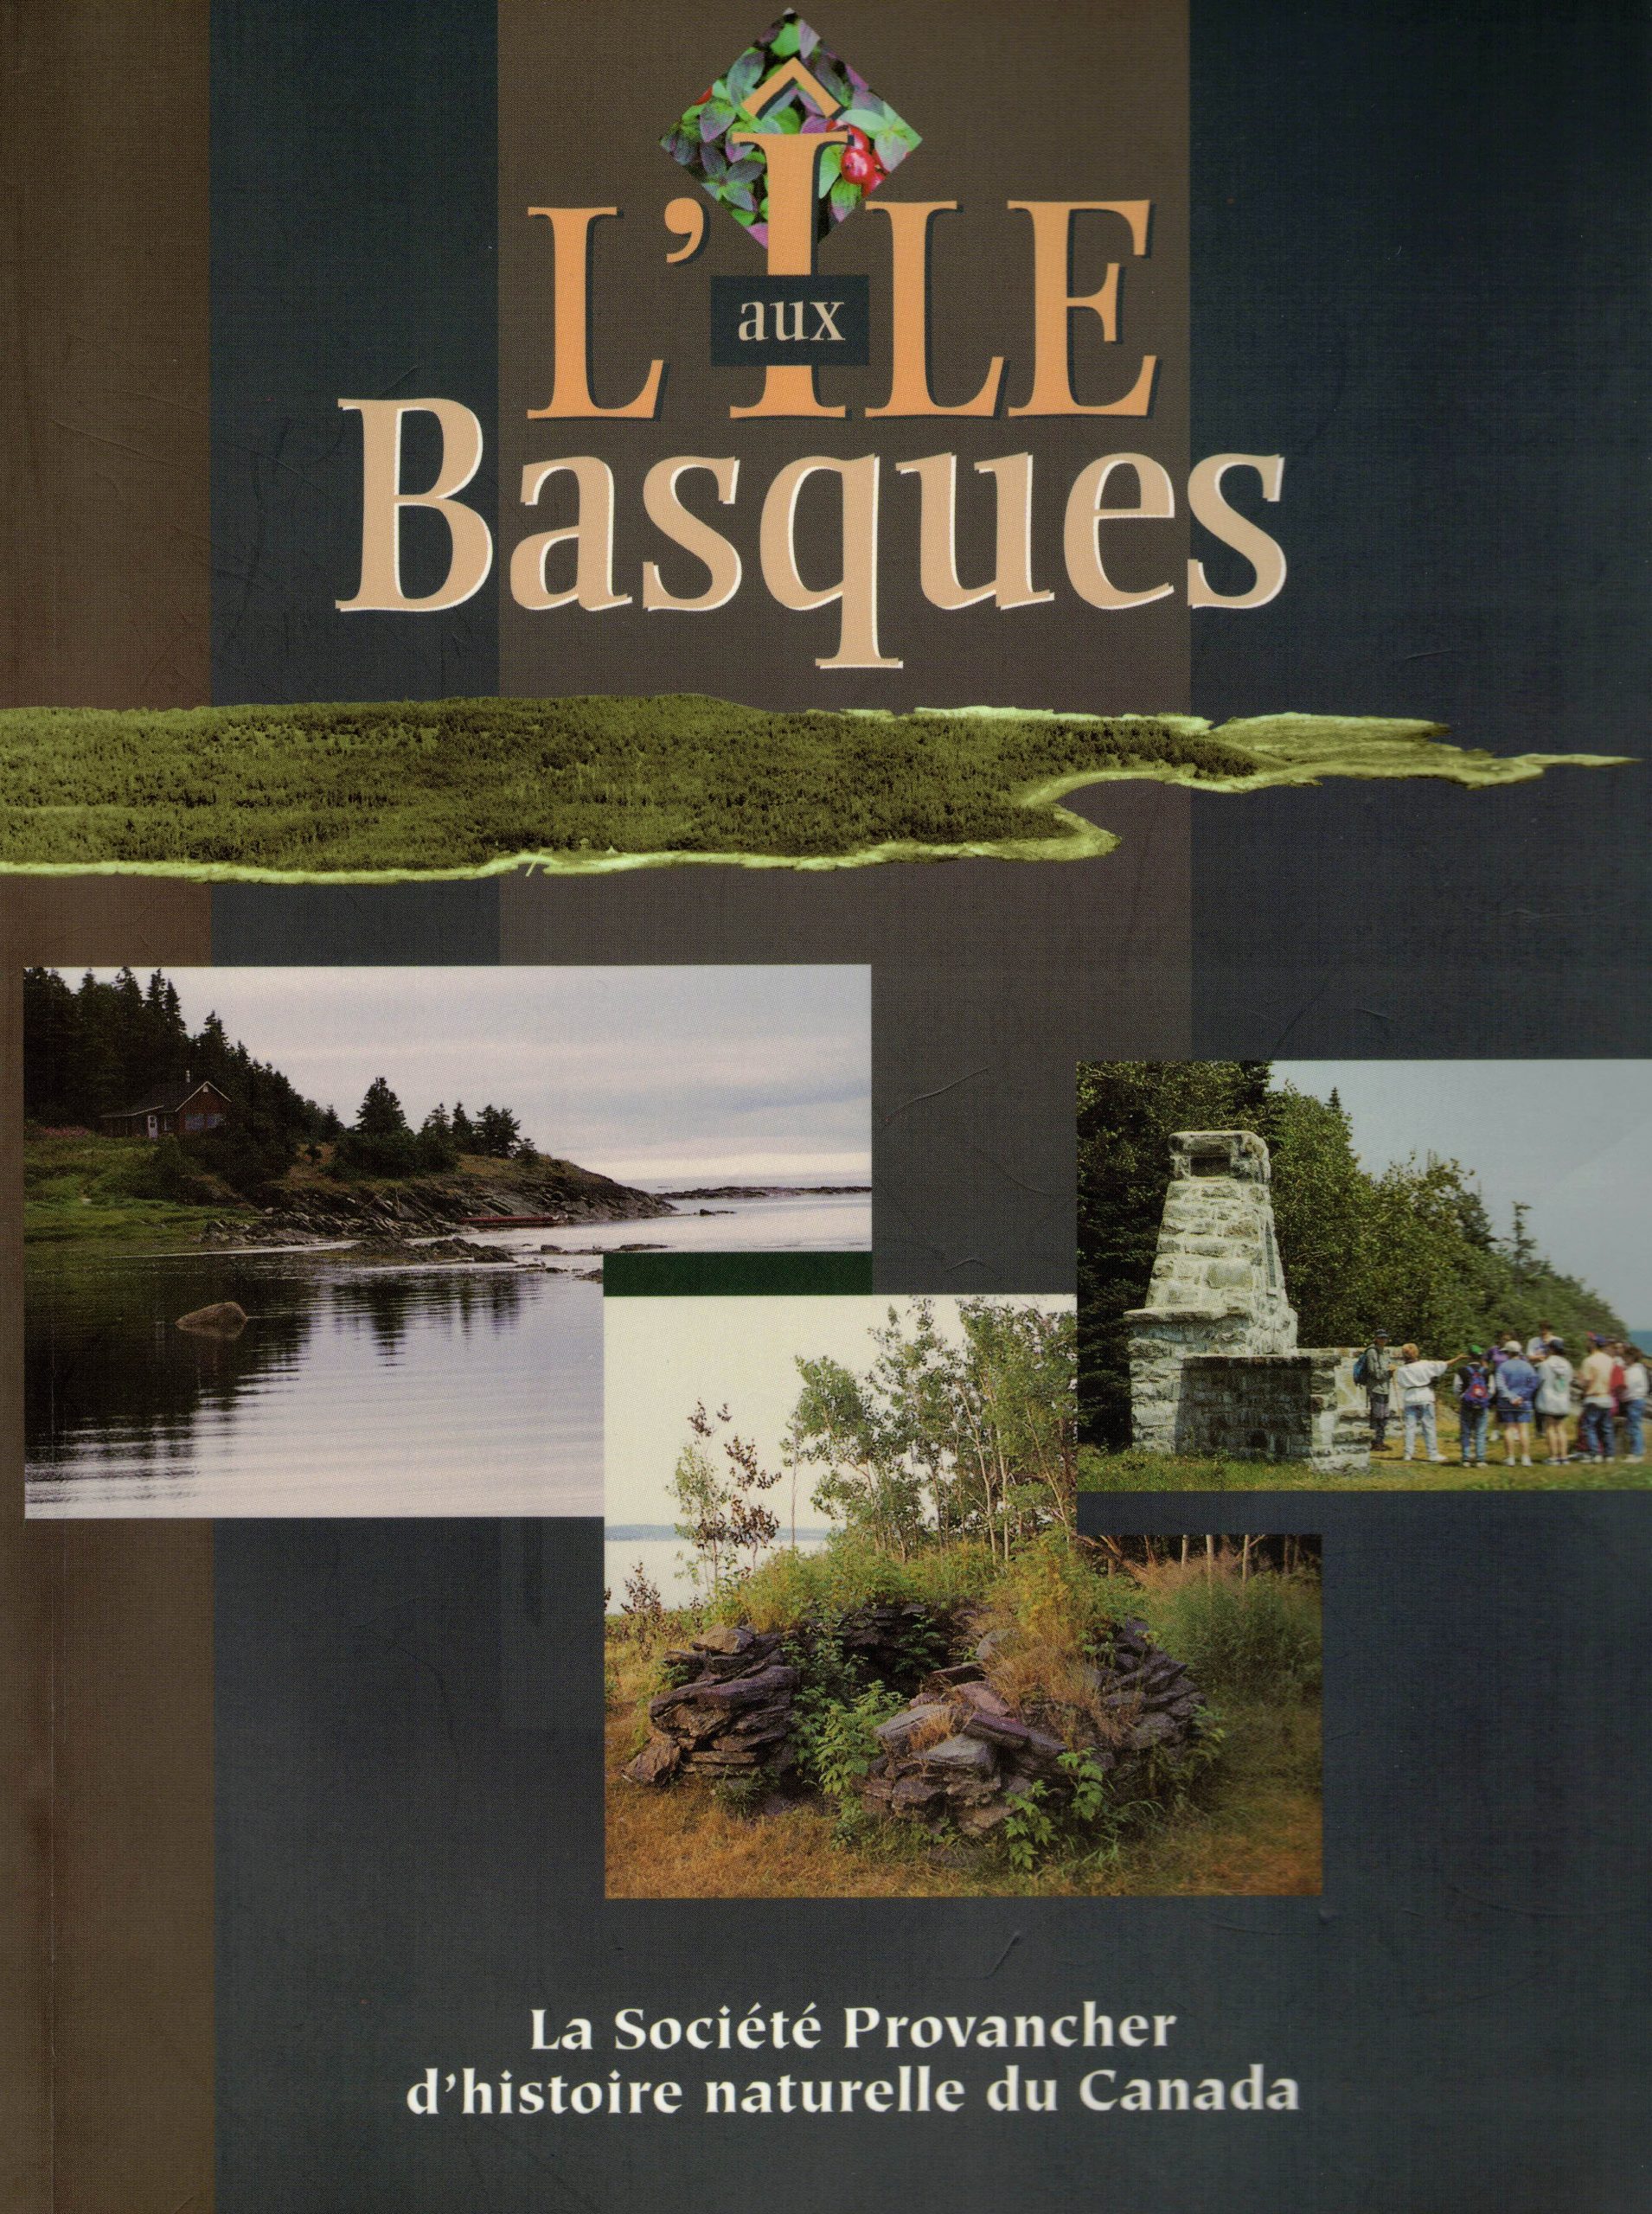 Volume: L'Île aux Basques. Société Provancher d'histoire naturelle. 263 p.